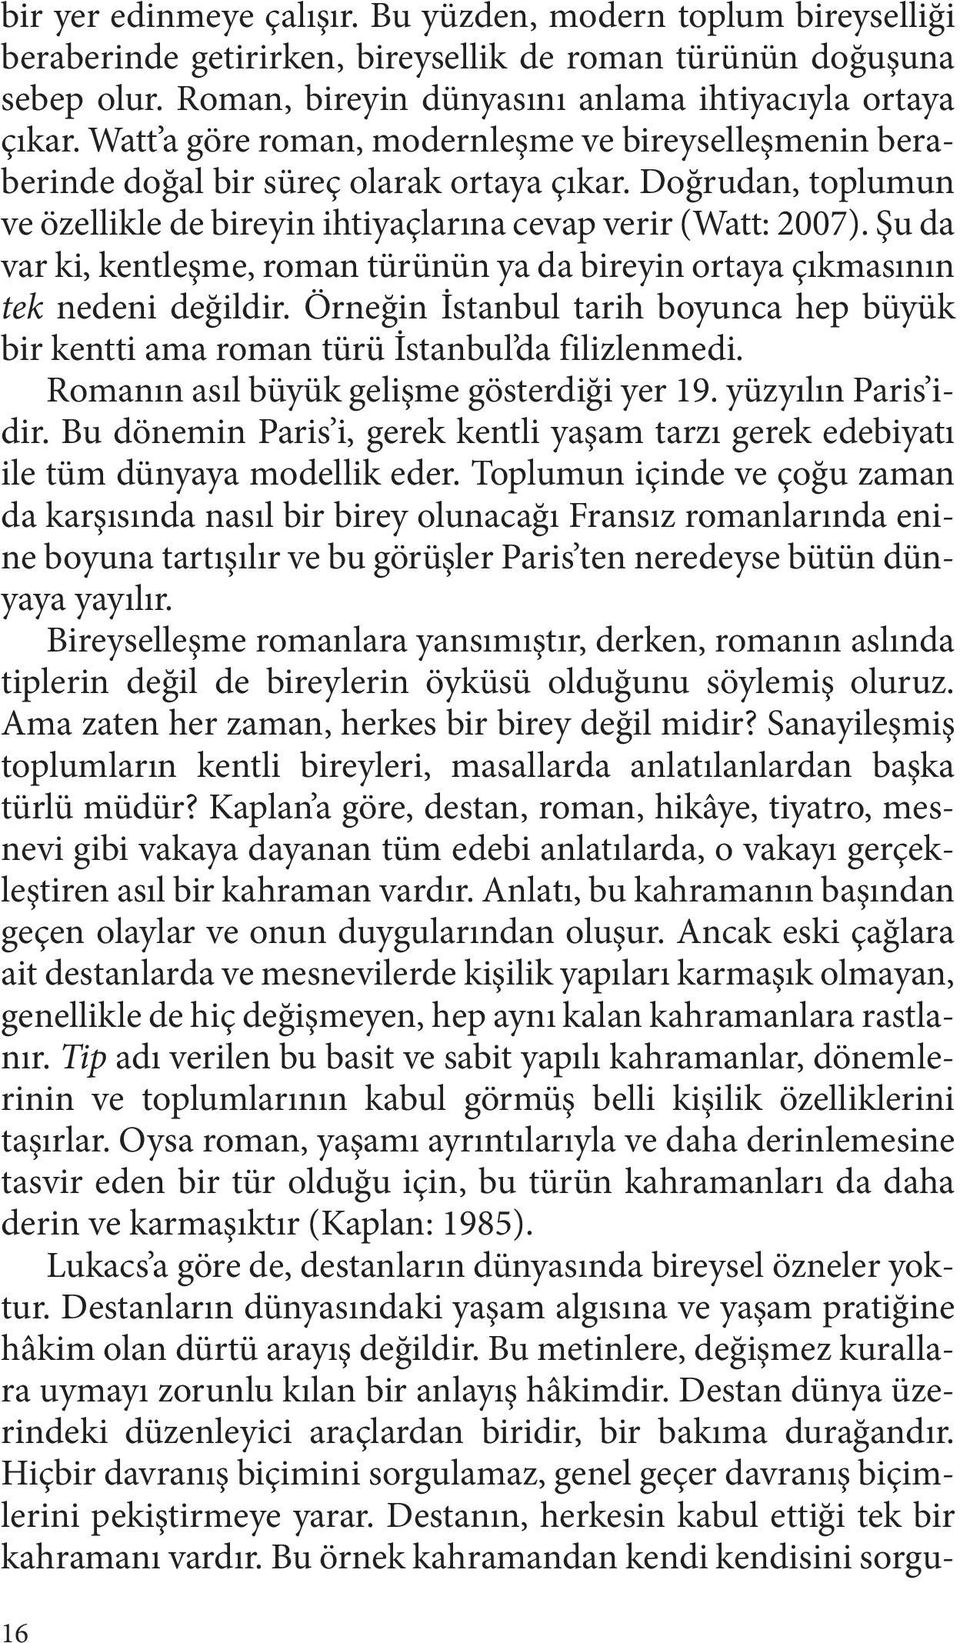 Şu da var ki, kentleşme, roman türünün ya da bireyin ortaya çıkmasının tek nedeni değildir. Örneğin İstanbul tarih boyunca hep büyük bir kentti ama roman türü İstanbul da filizlenmedi.